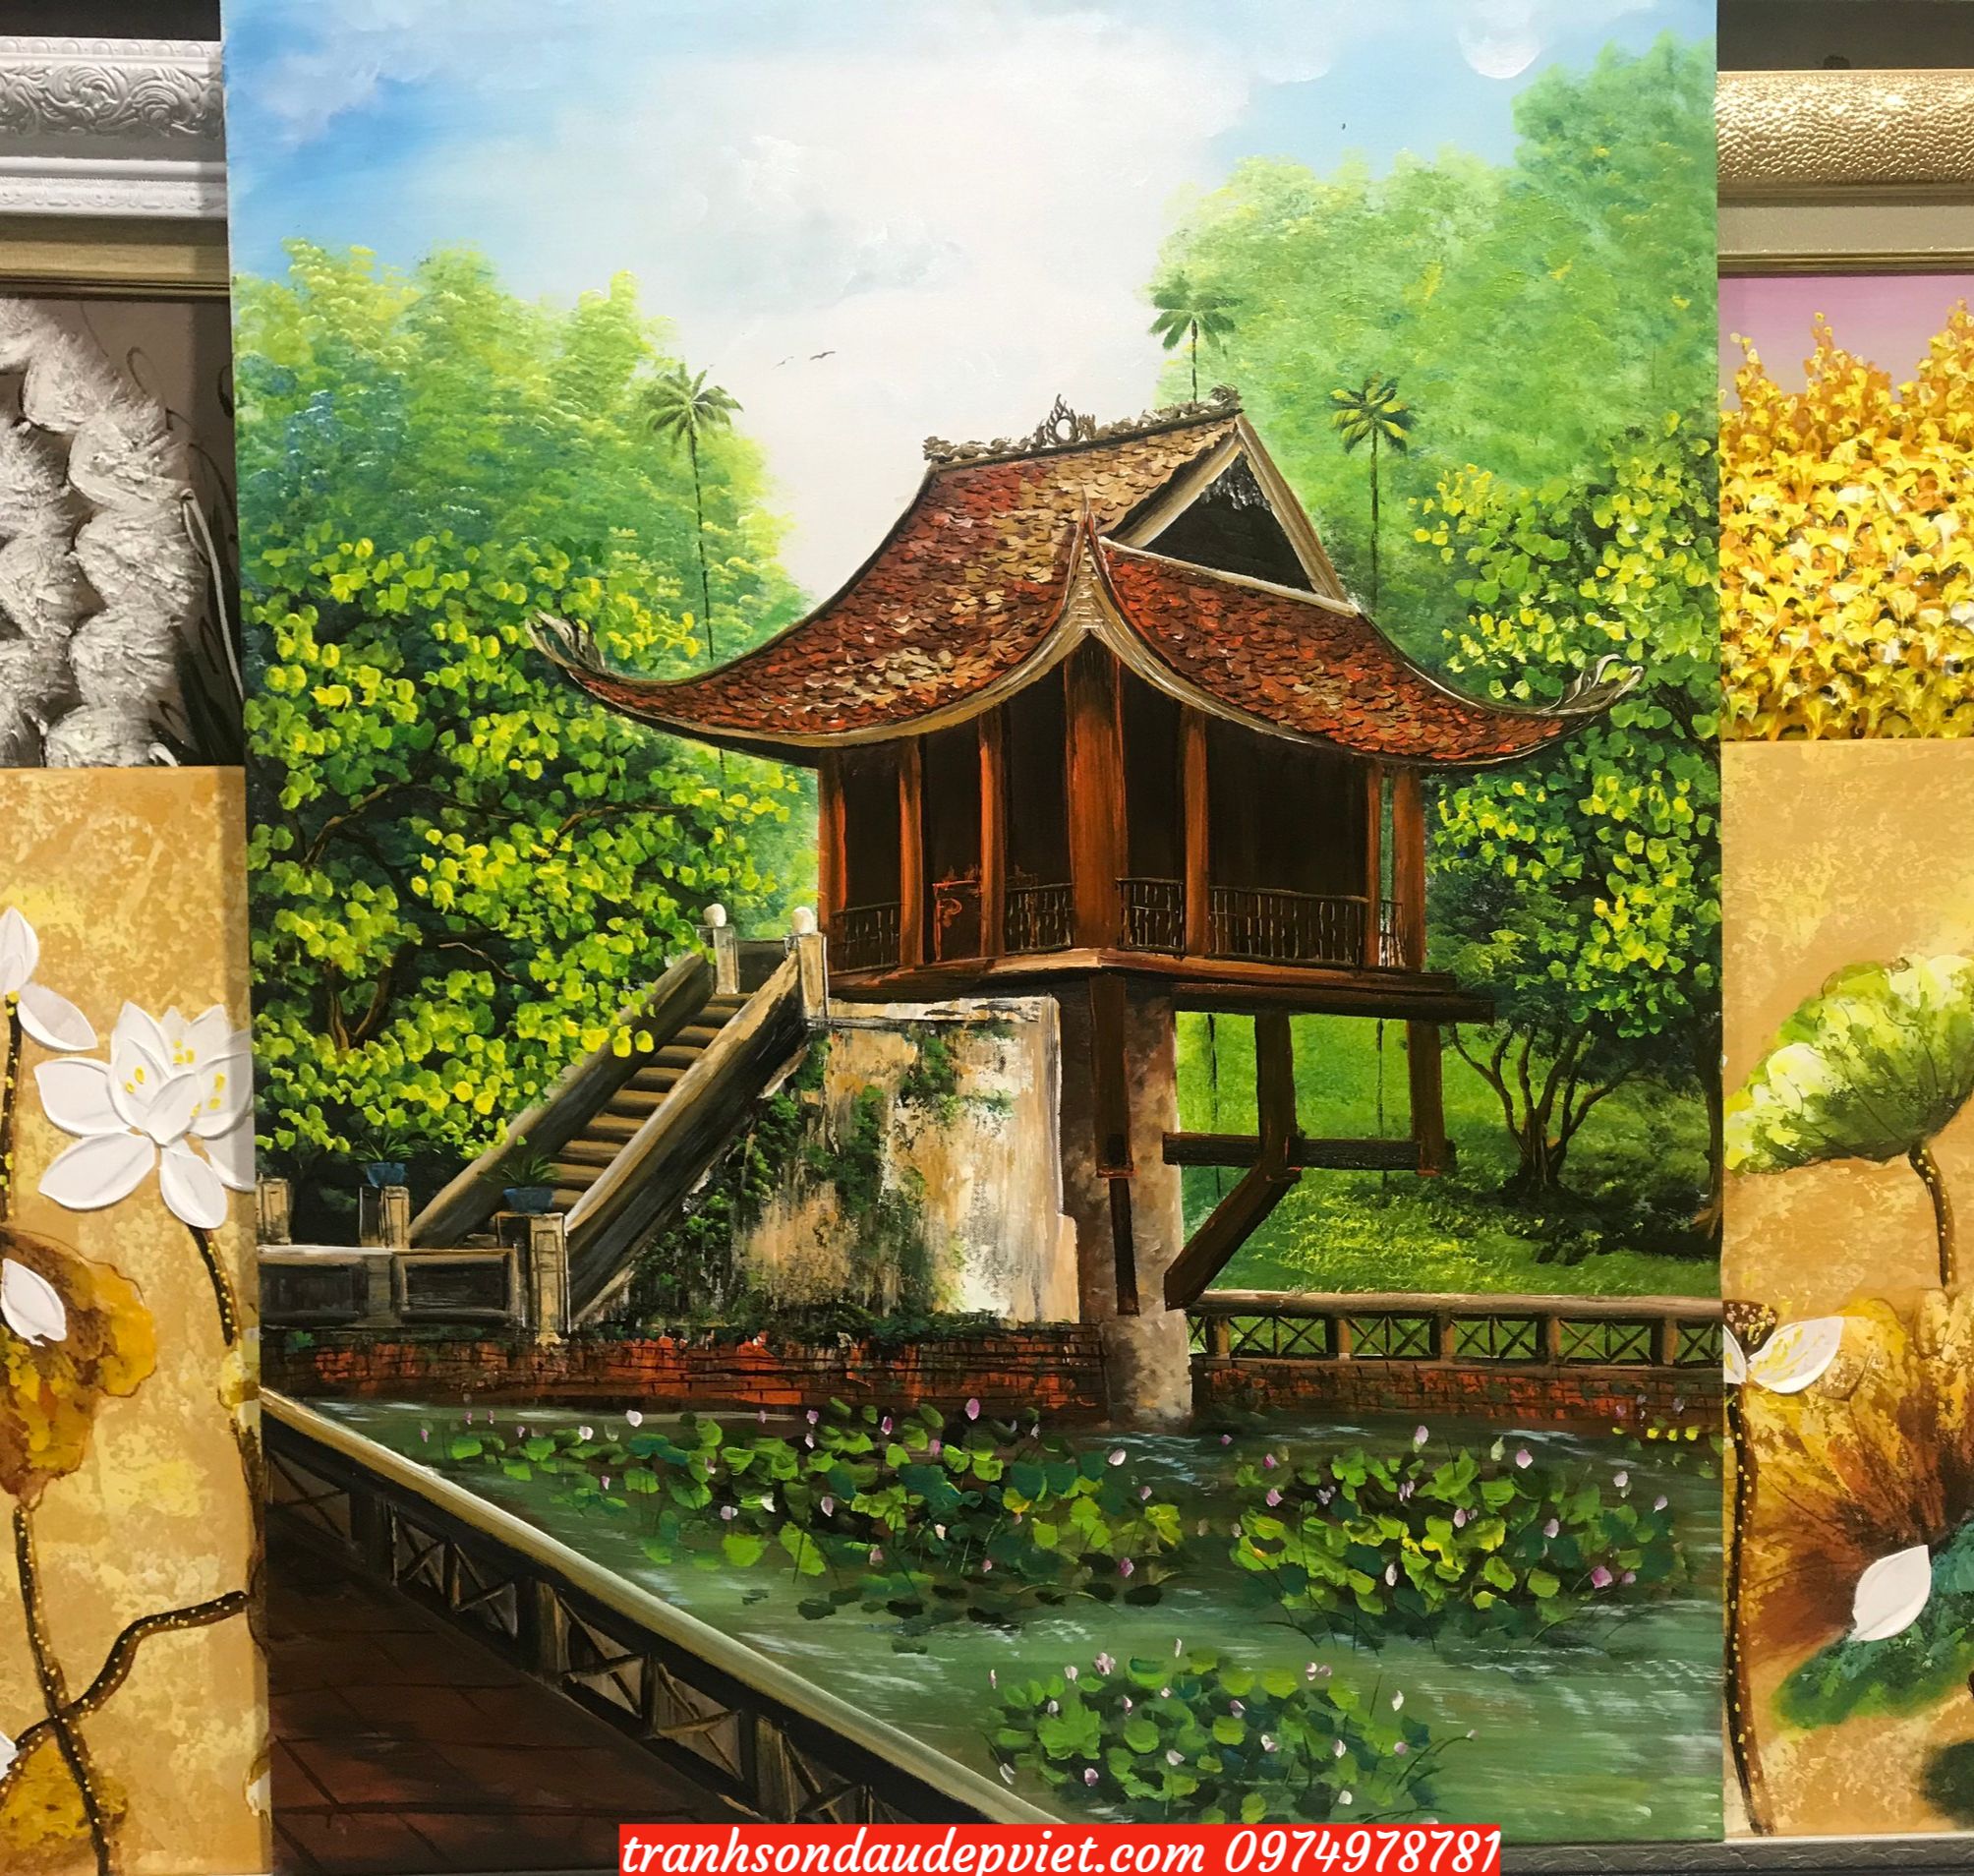 Tranh sơn dầu chùa một cột việt nam SB125 - Tranh Sơn Dầu Đẹp Việt - Xưởng tranh  sơn dầu